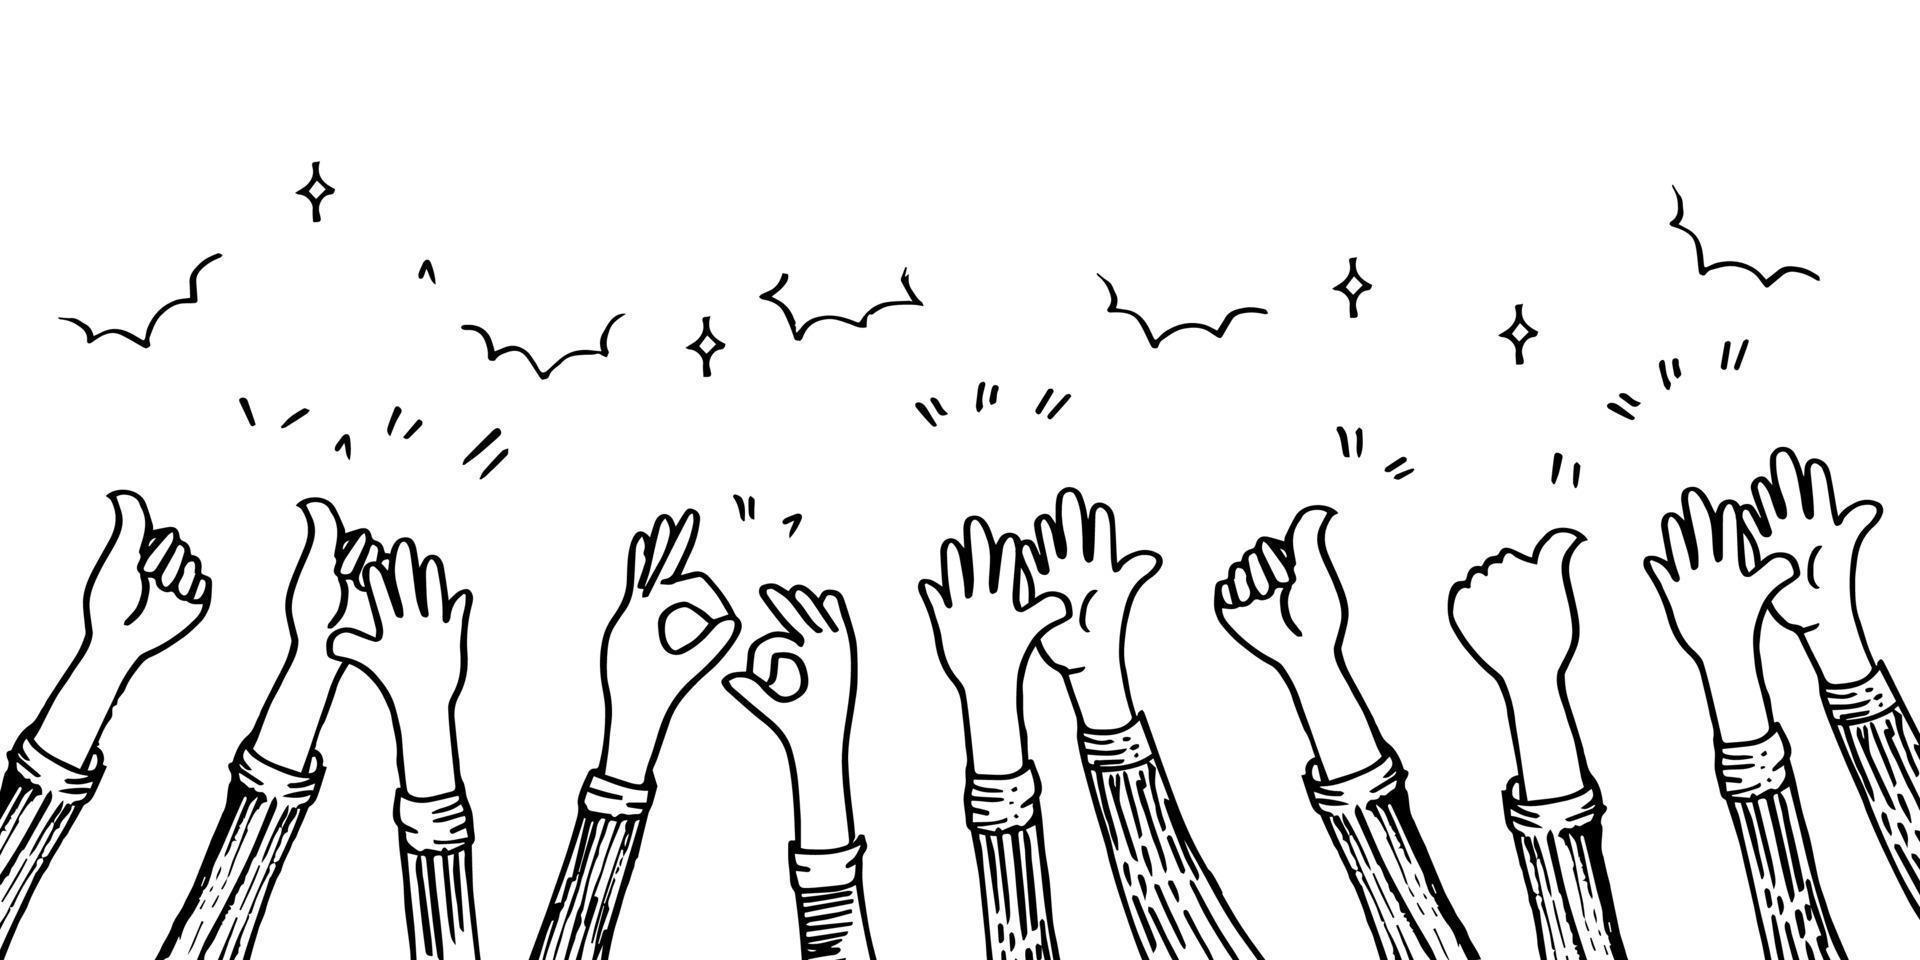 disegnato a mano di mani che applaudono l'ovazione. applausi, gesto delle mani su stile doodle, illustrazione vettoriale